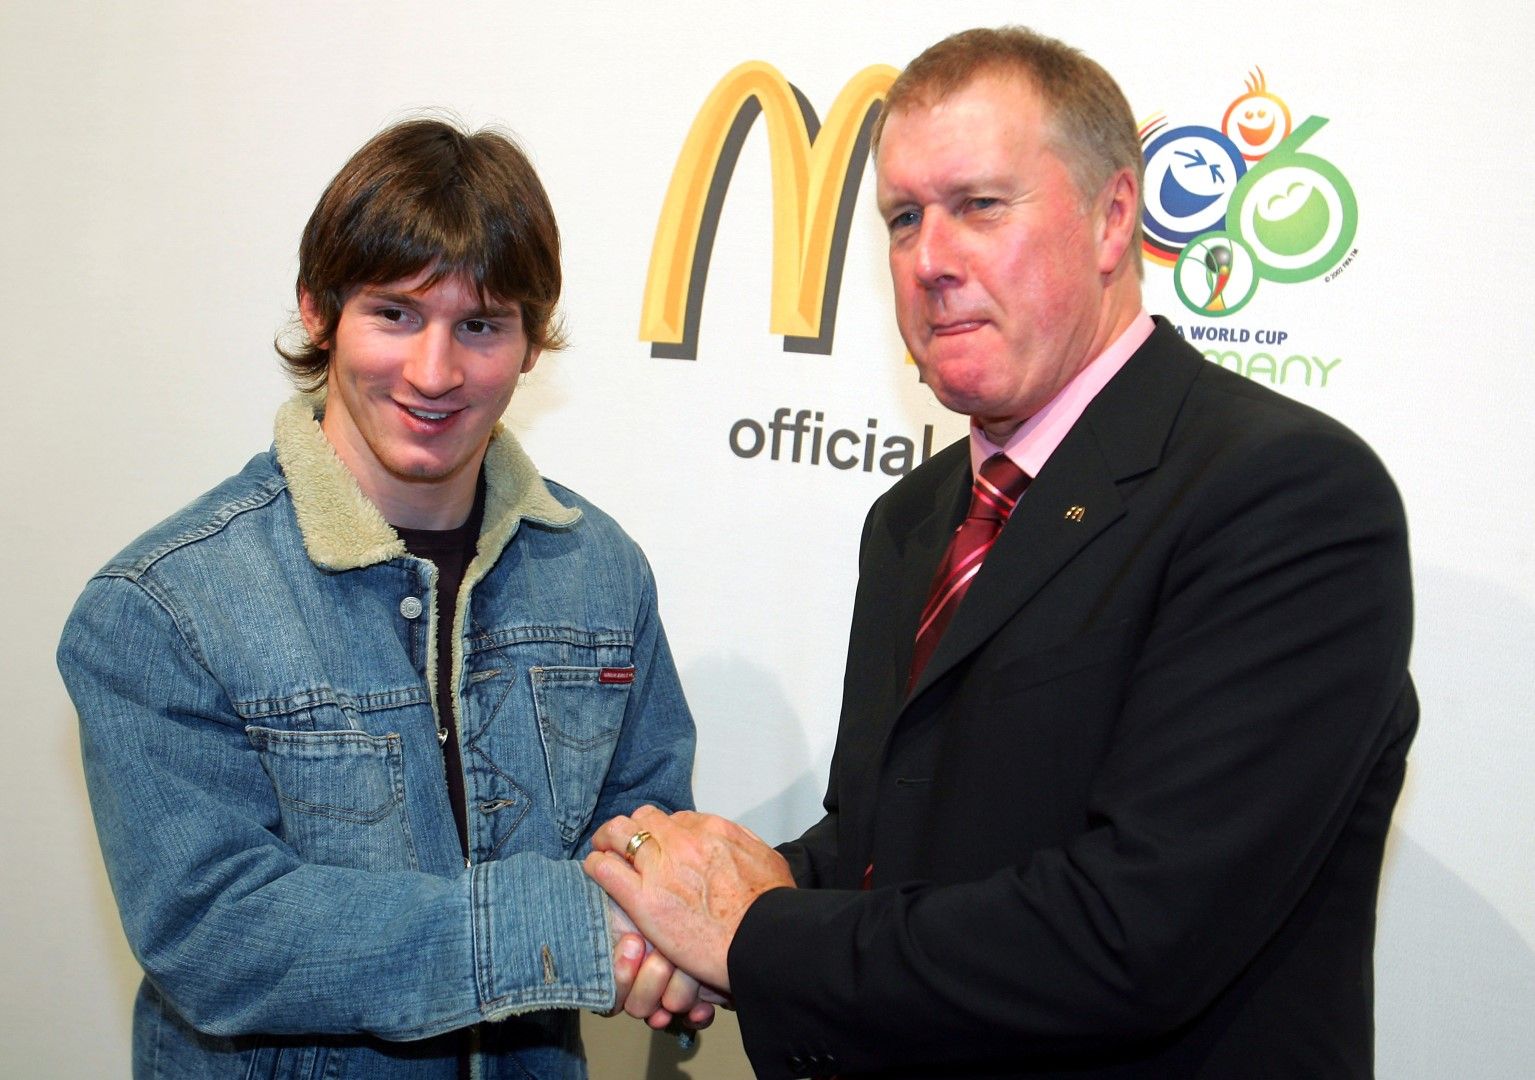 Меси с Джеф Хърст, героят на Англия от Мондиал 1966. Британската легенда засне фотосесия с най-добрия млад играч в света преди първенството през 2006-а, което бе дебют на Лео на Мондиали.